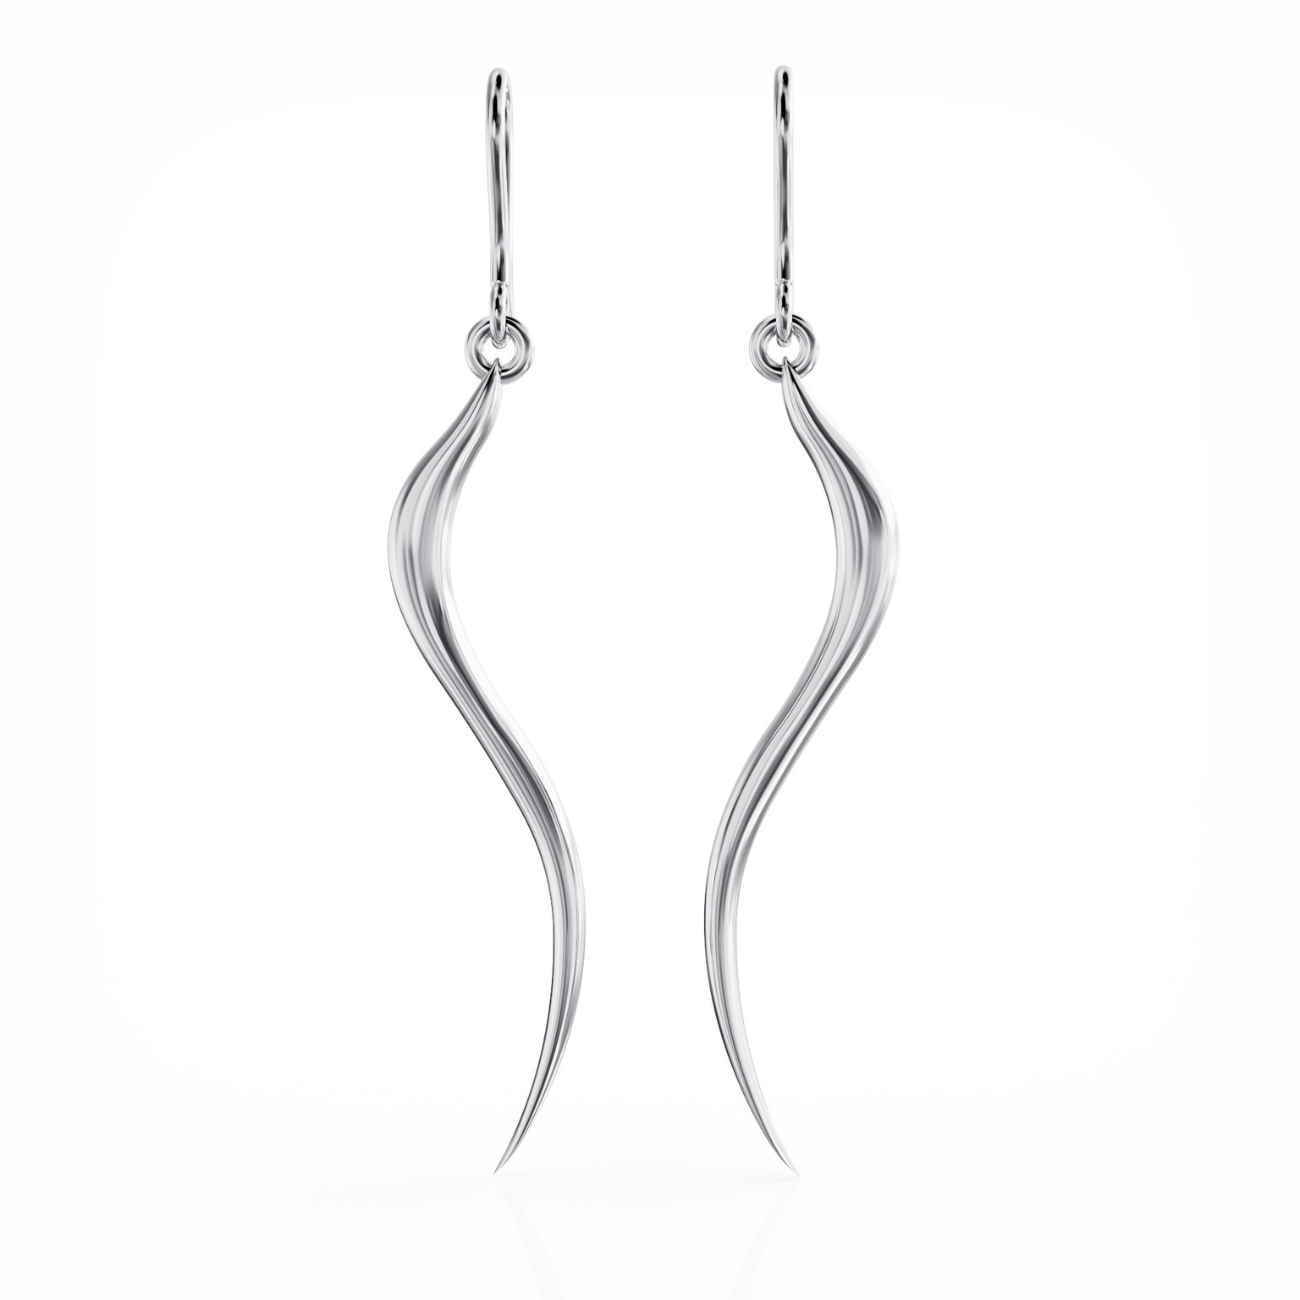 Swirl earrings silver